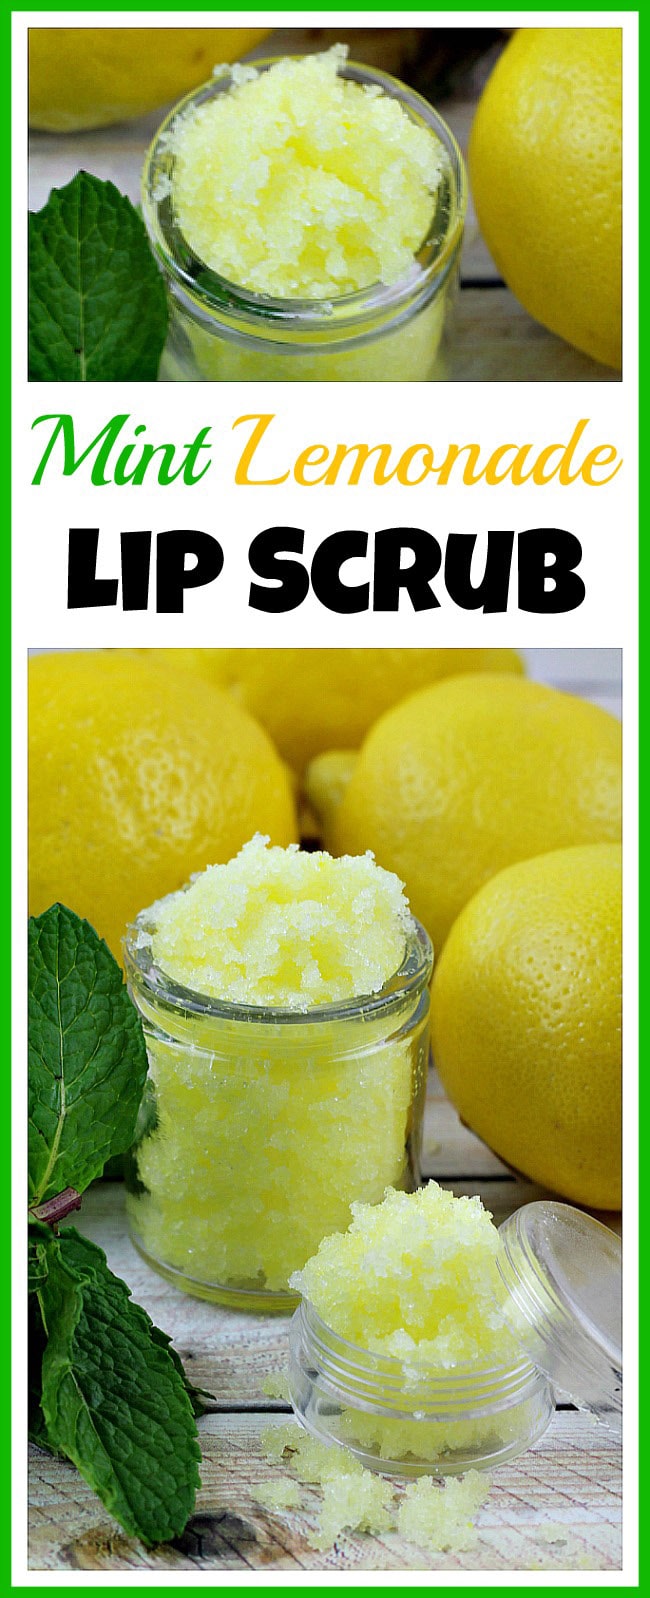 DIY lip scrub